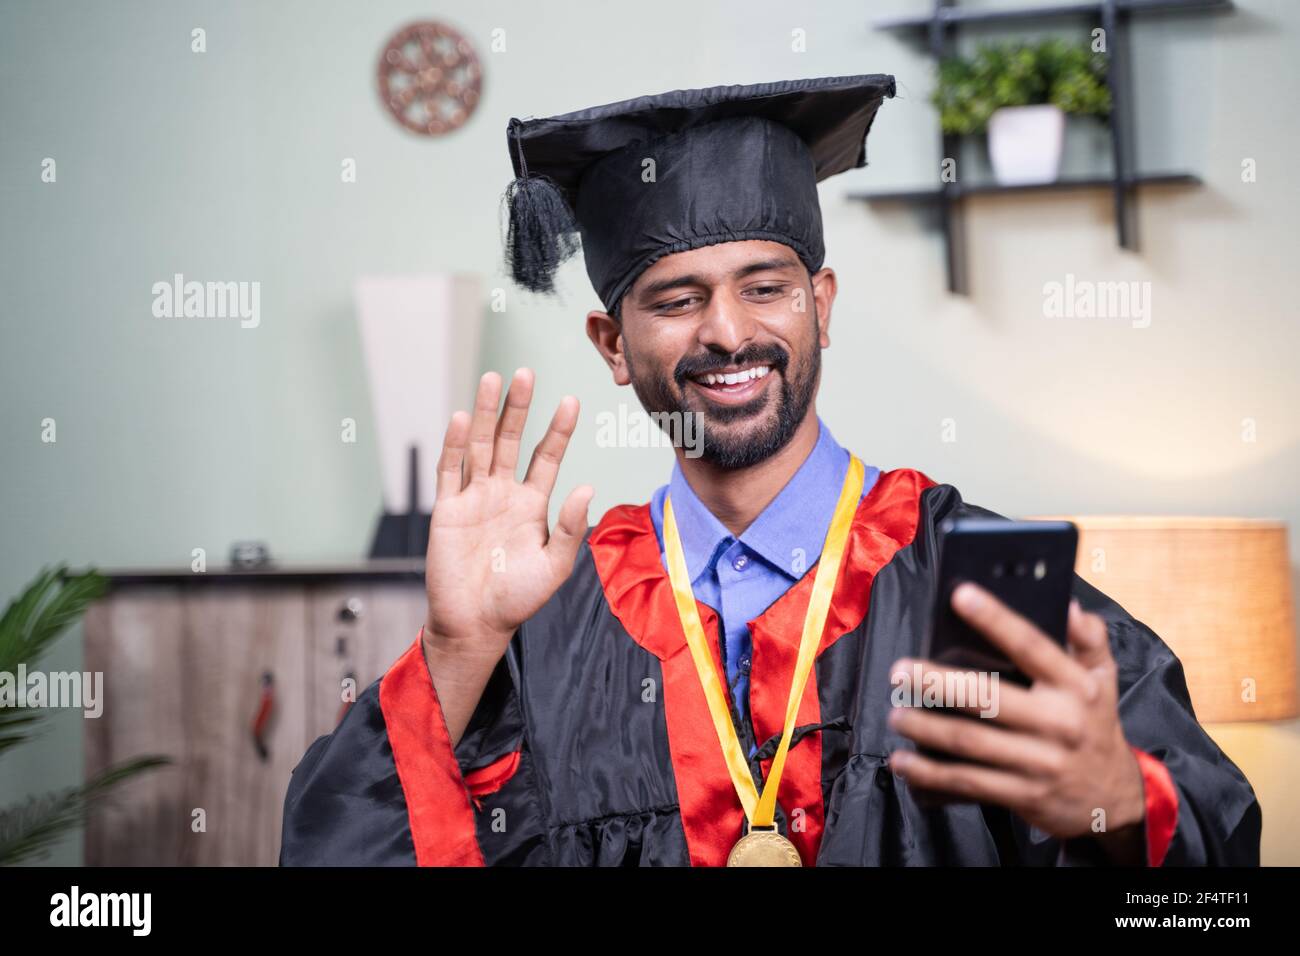 Estudiante que asiste a su celebración de graduación en vídeo en línea desde el teléfono móvil en el vestido de graduación - concepto de celebraciones virtuales, nuevo normal durante Foto de stock